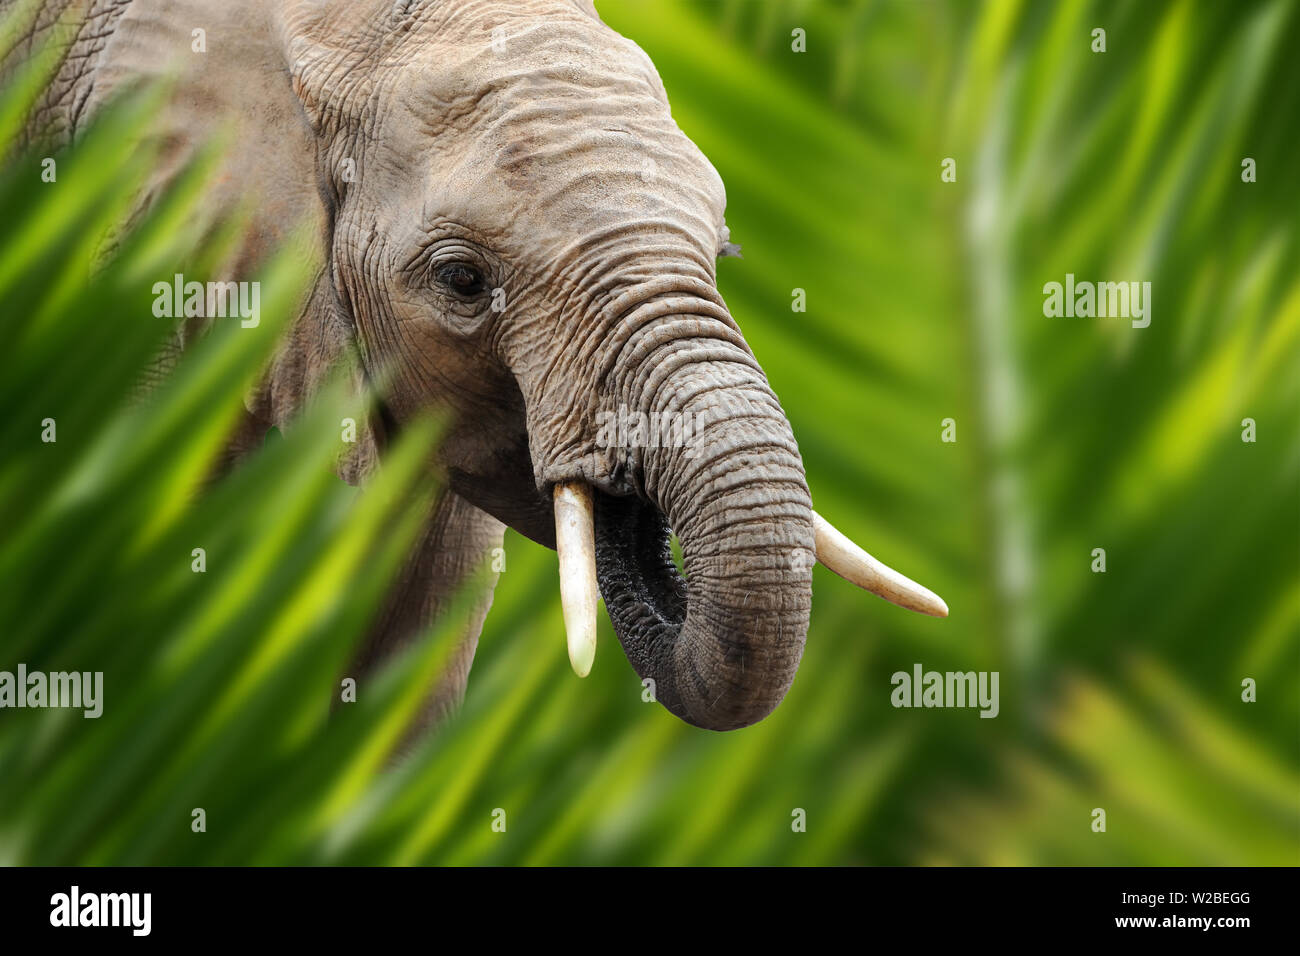 Close up portrait d'éléphant dans la jungle avec feuille Banque D'Images